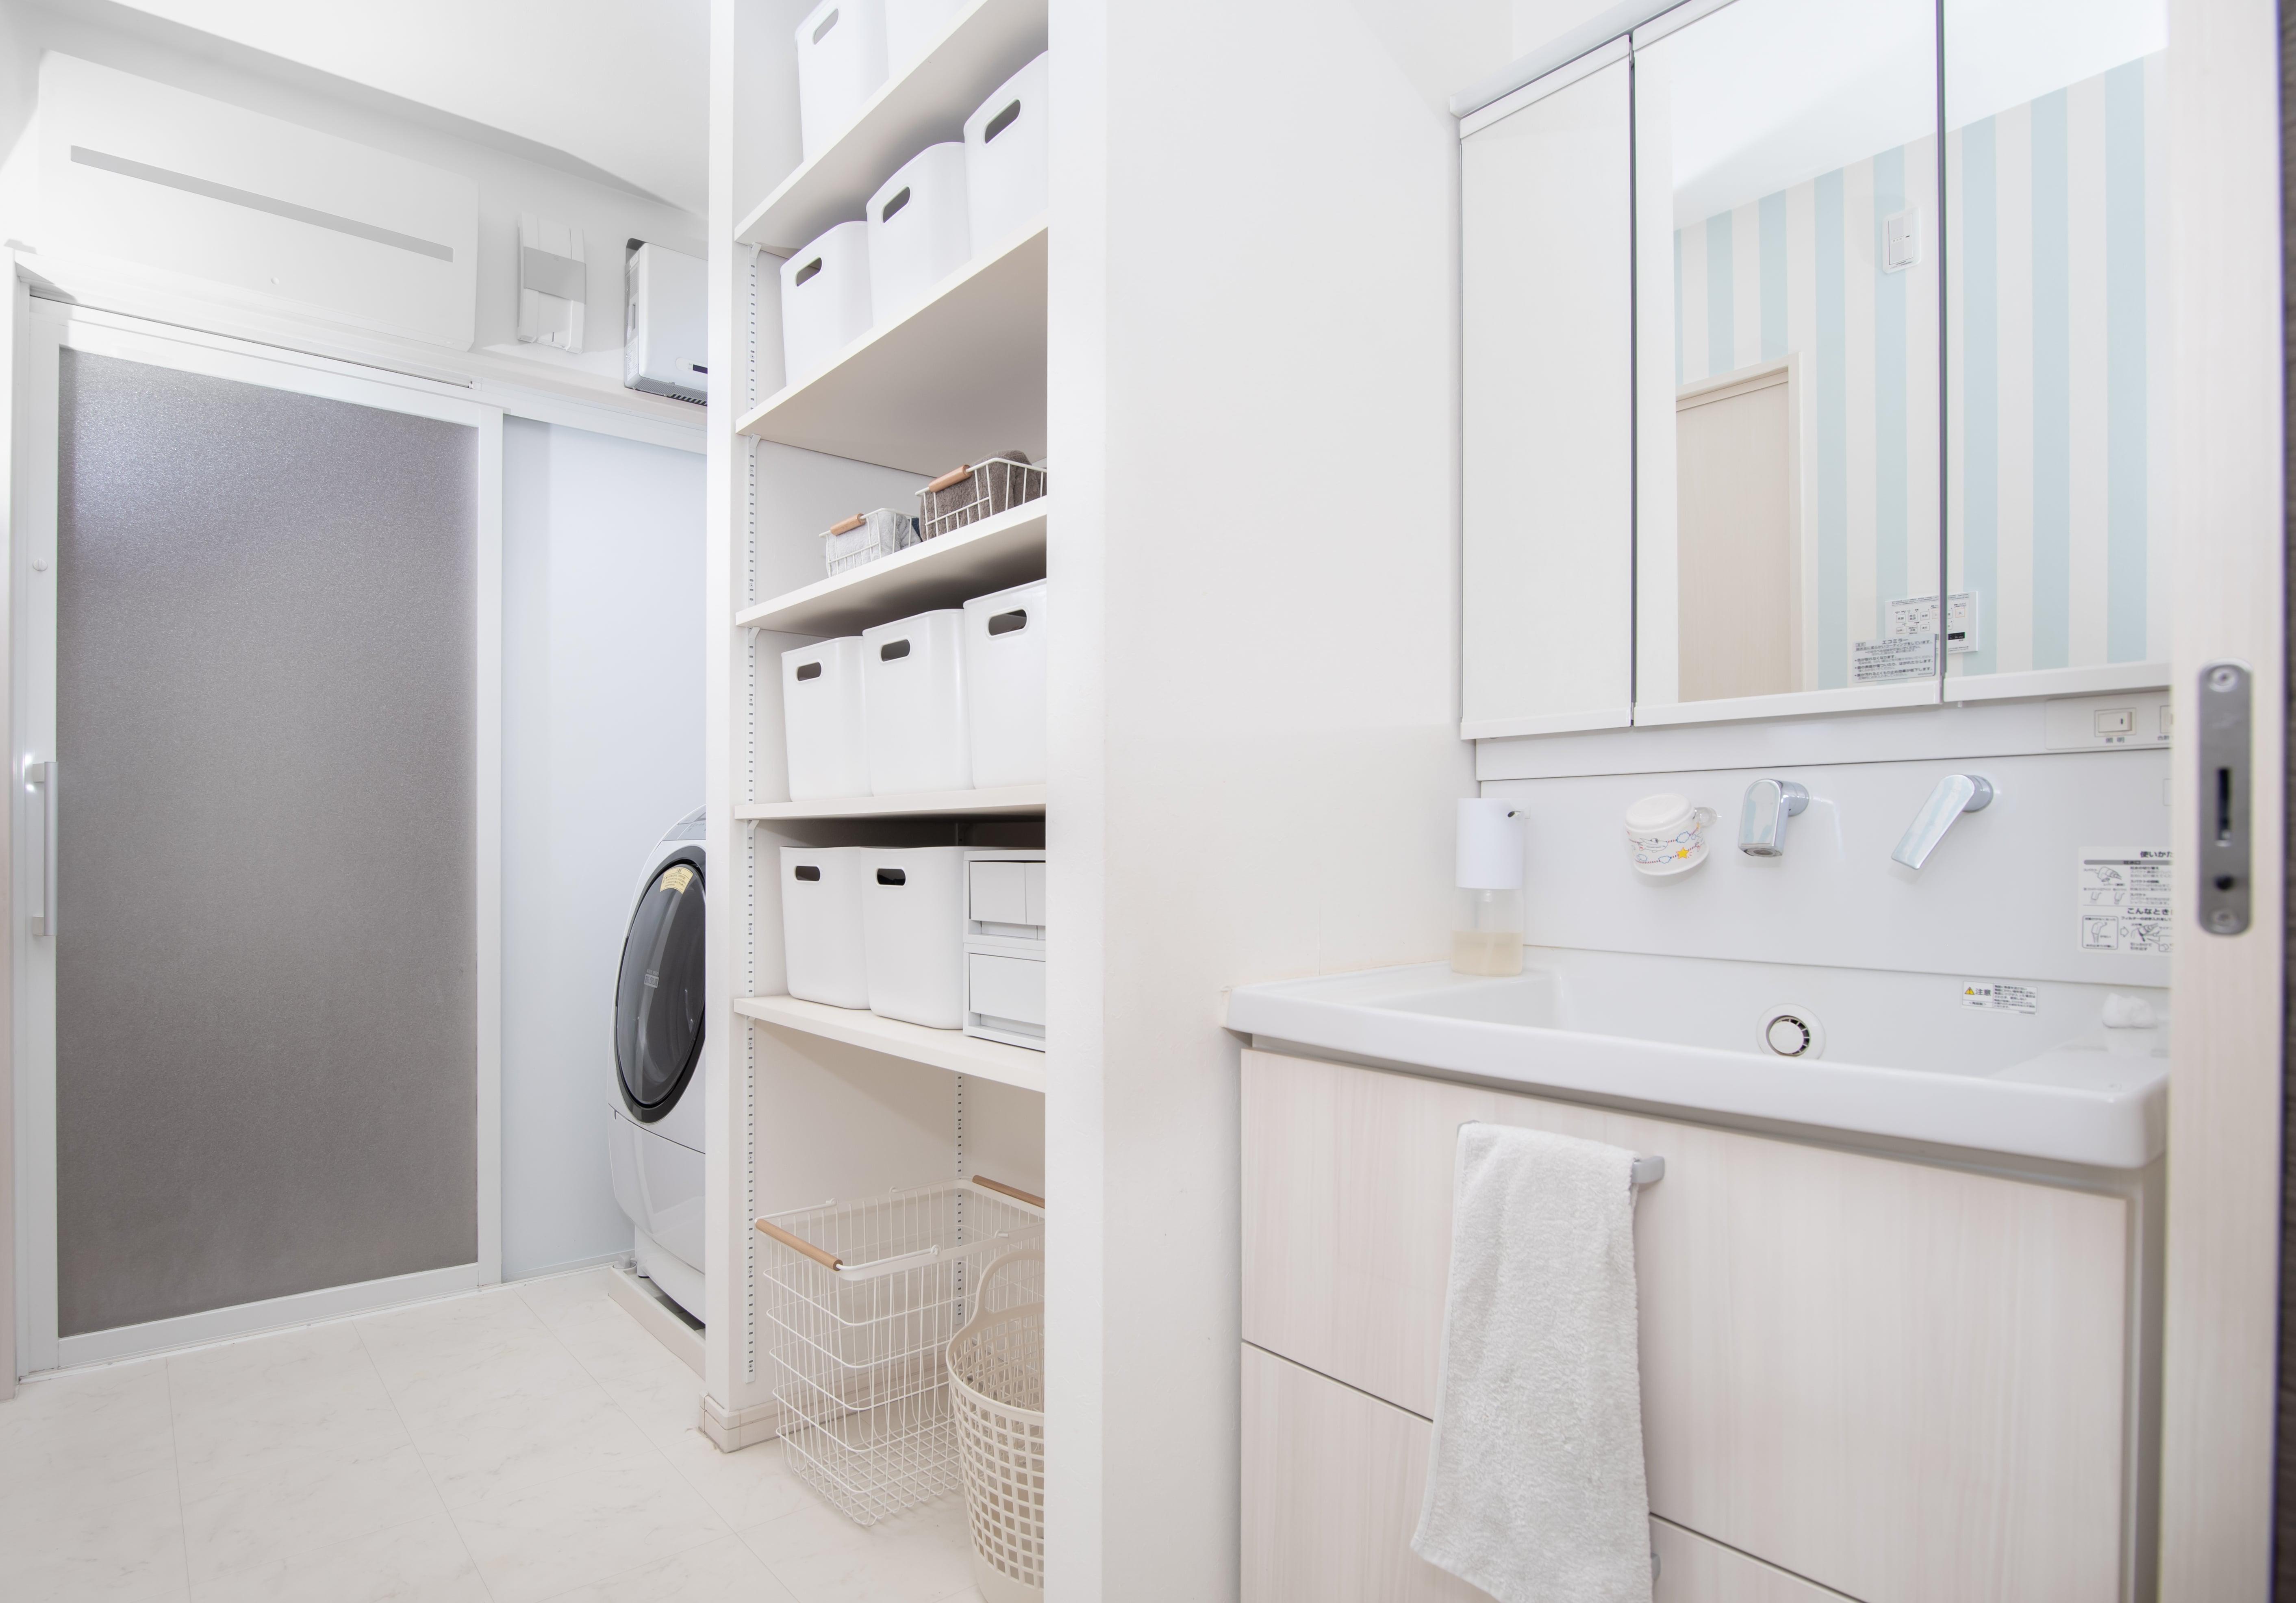 オシャレに見せる 洗面所の収納アイデア 便利な収納アイテムをご紹介 暮らしのコンサルタント 100満ボルト